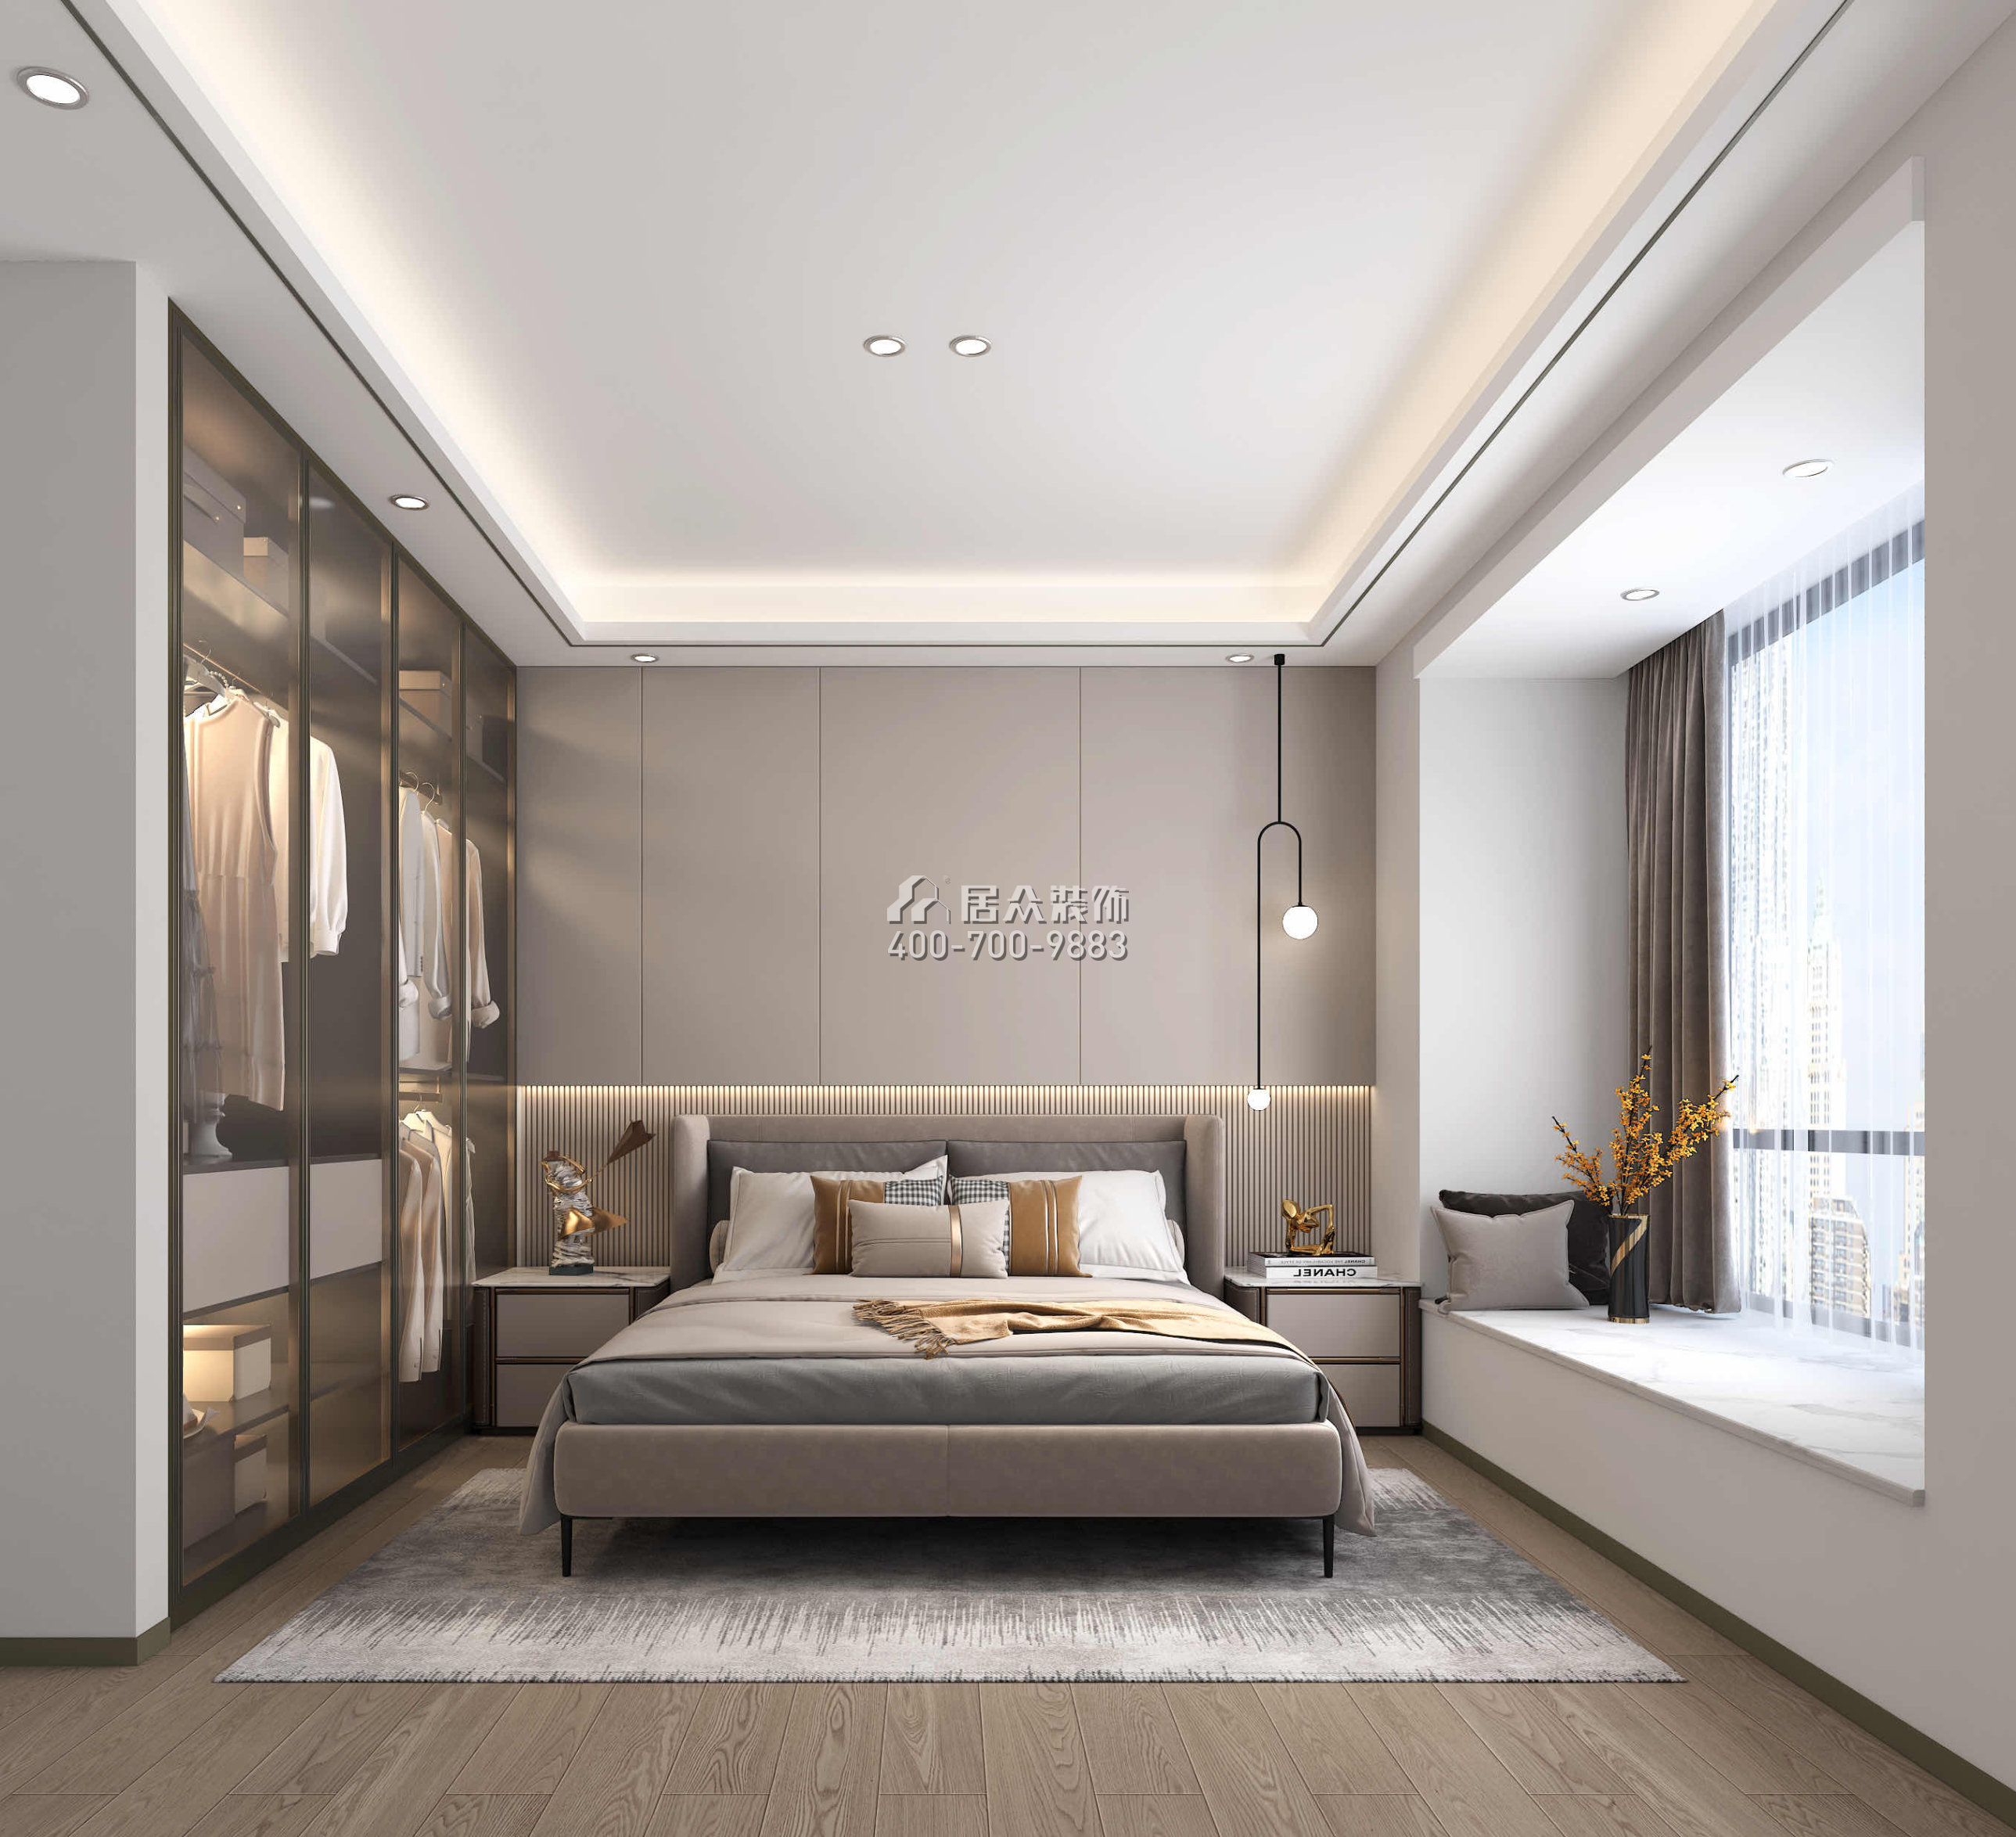 壹方中心175平方米现代简约风格平层户型卧室装修效果图